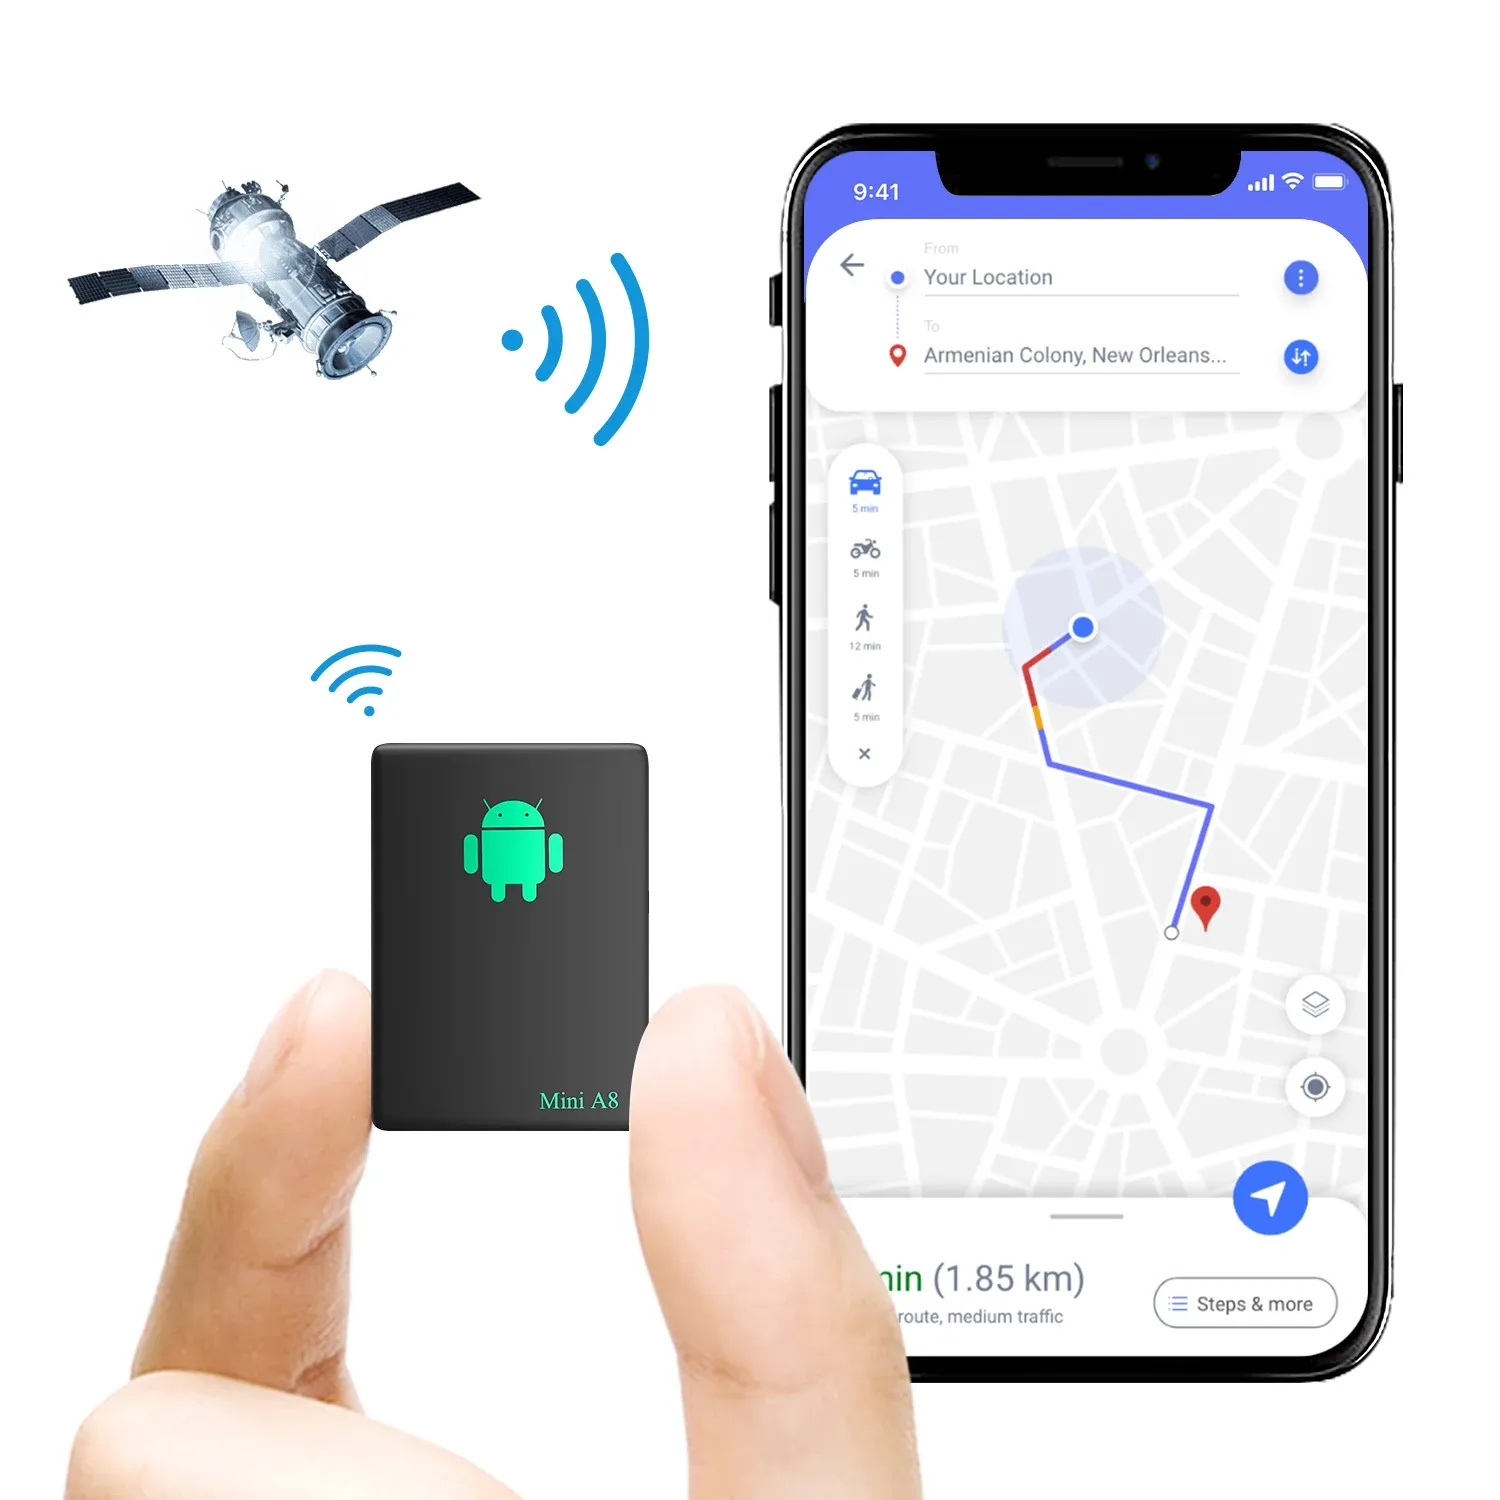 Accessoires mini GPS tracker Antitheft en temps réel suivant le dispositif de suivi des localisateurs GPS pour les sacs Kids Satchels Documents importants